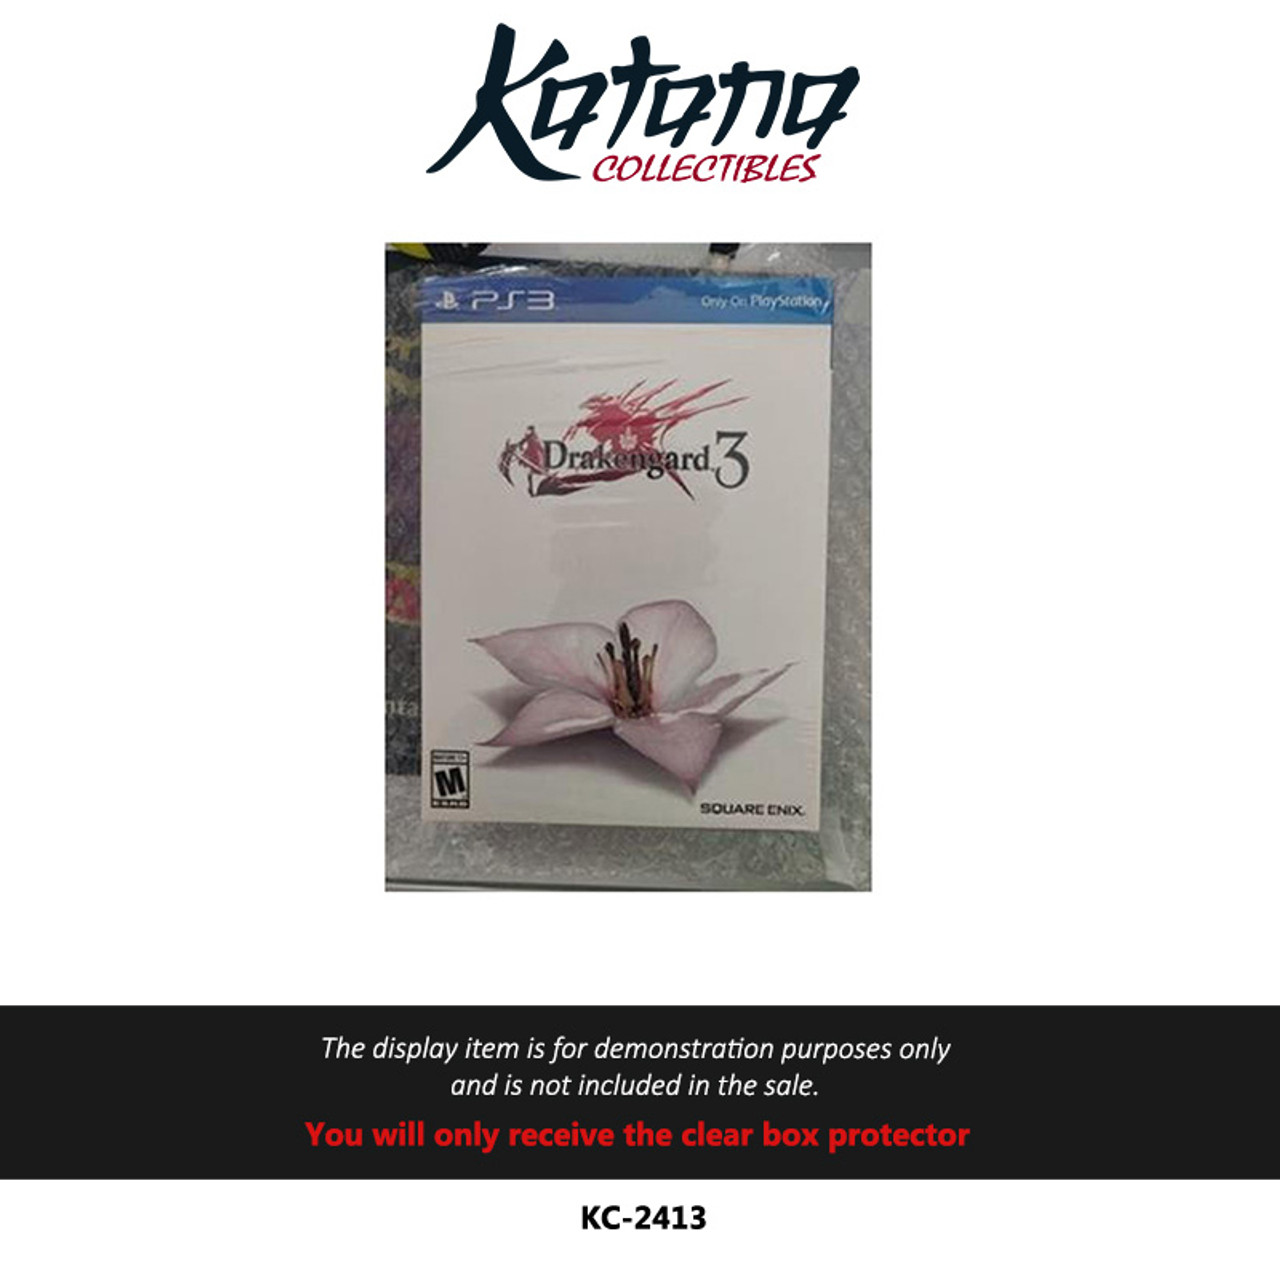 Katana Collectibles Protector For Drakengard 3 Collector Edition